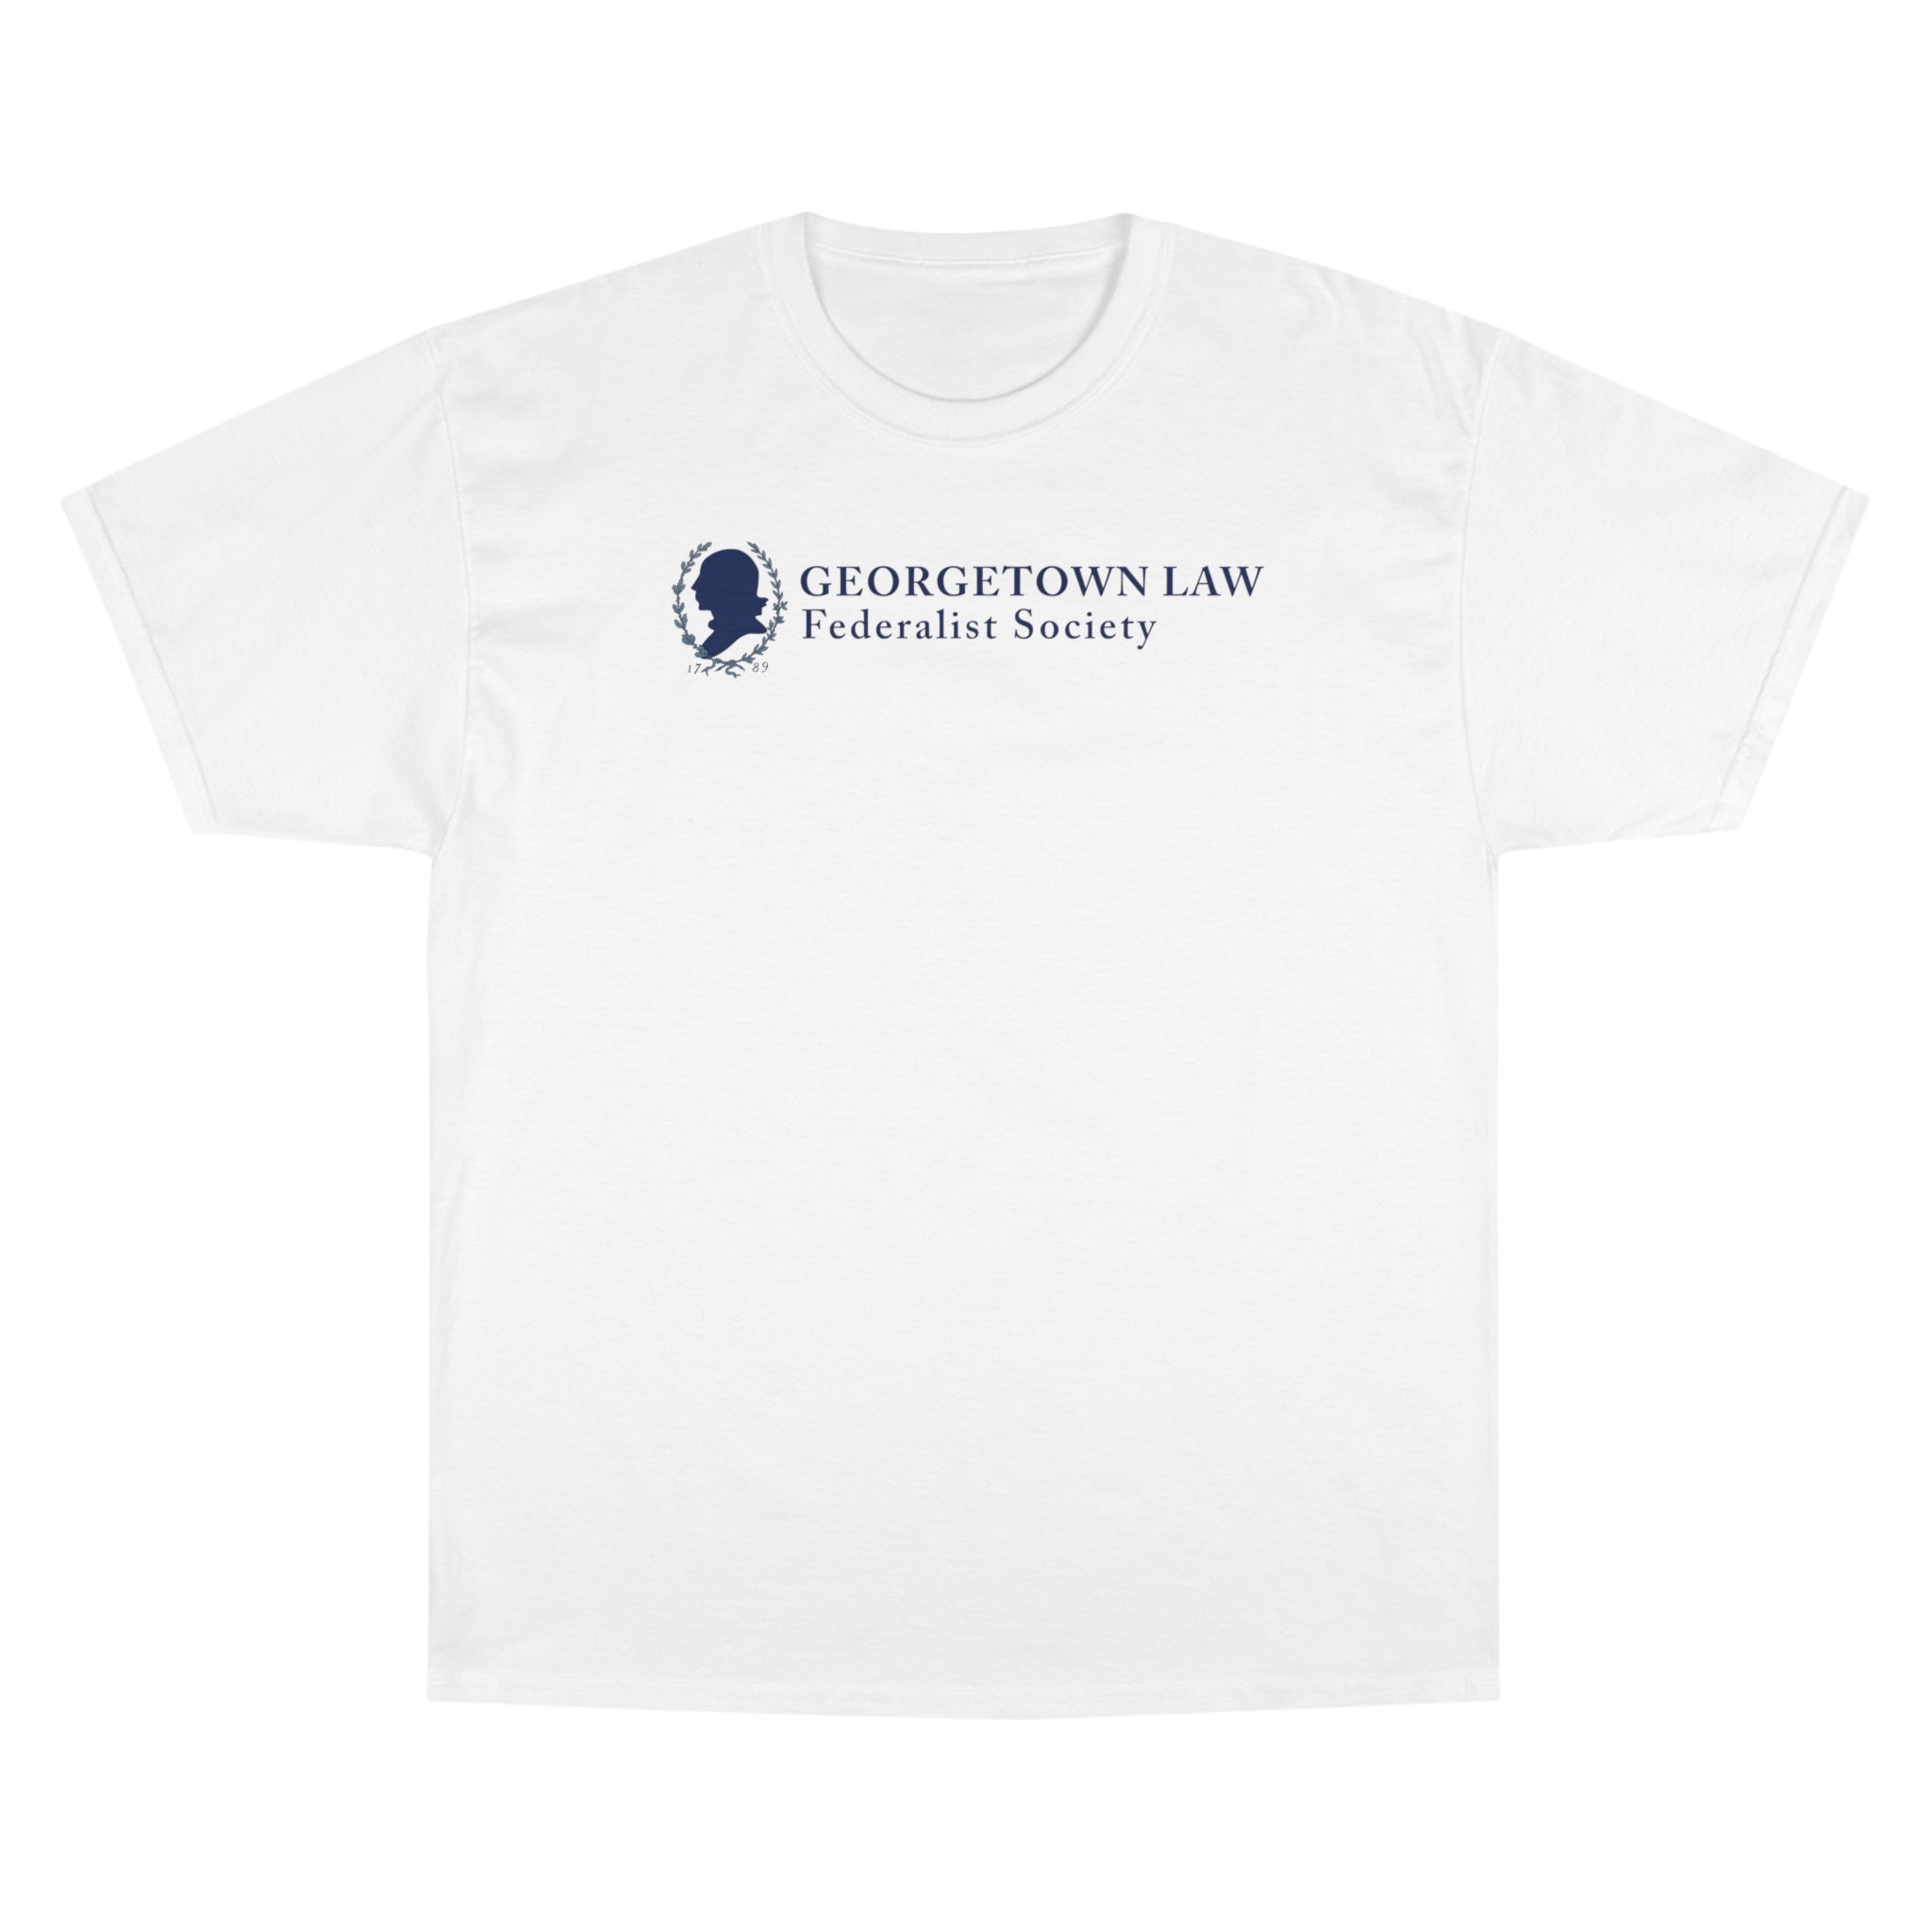 Logo T-Shirt (Georgetown Law Fed Soc)